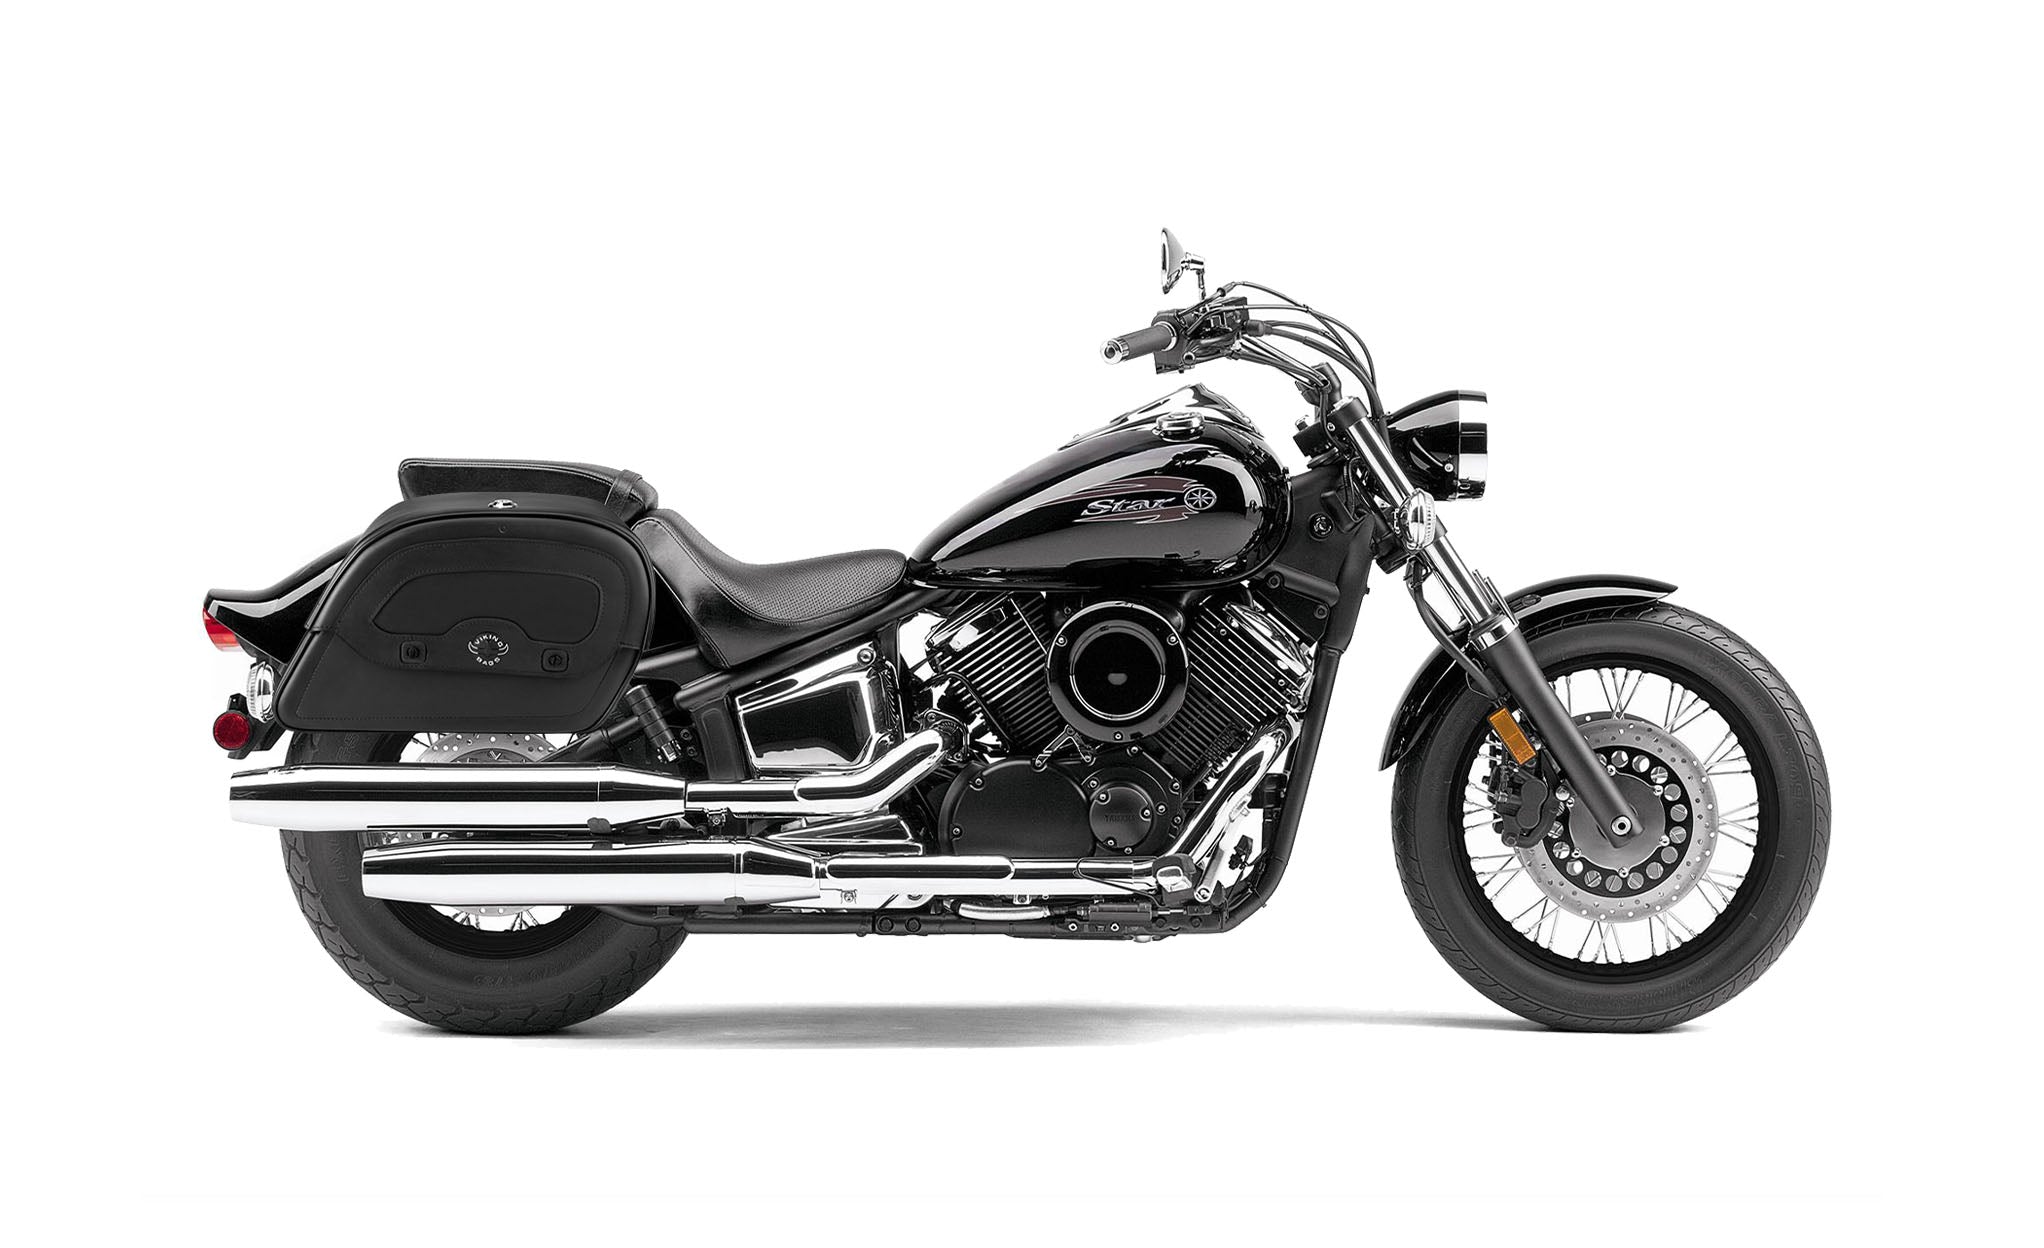 Viking Warrior Large Yamaha V Star 1100 Custom Xvs11T Leather Motorcycle Saddlebags on Bike Photo @expand